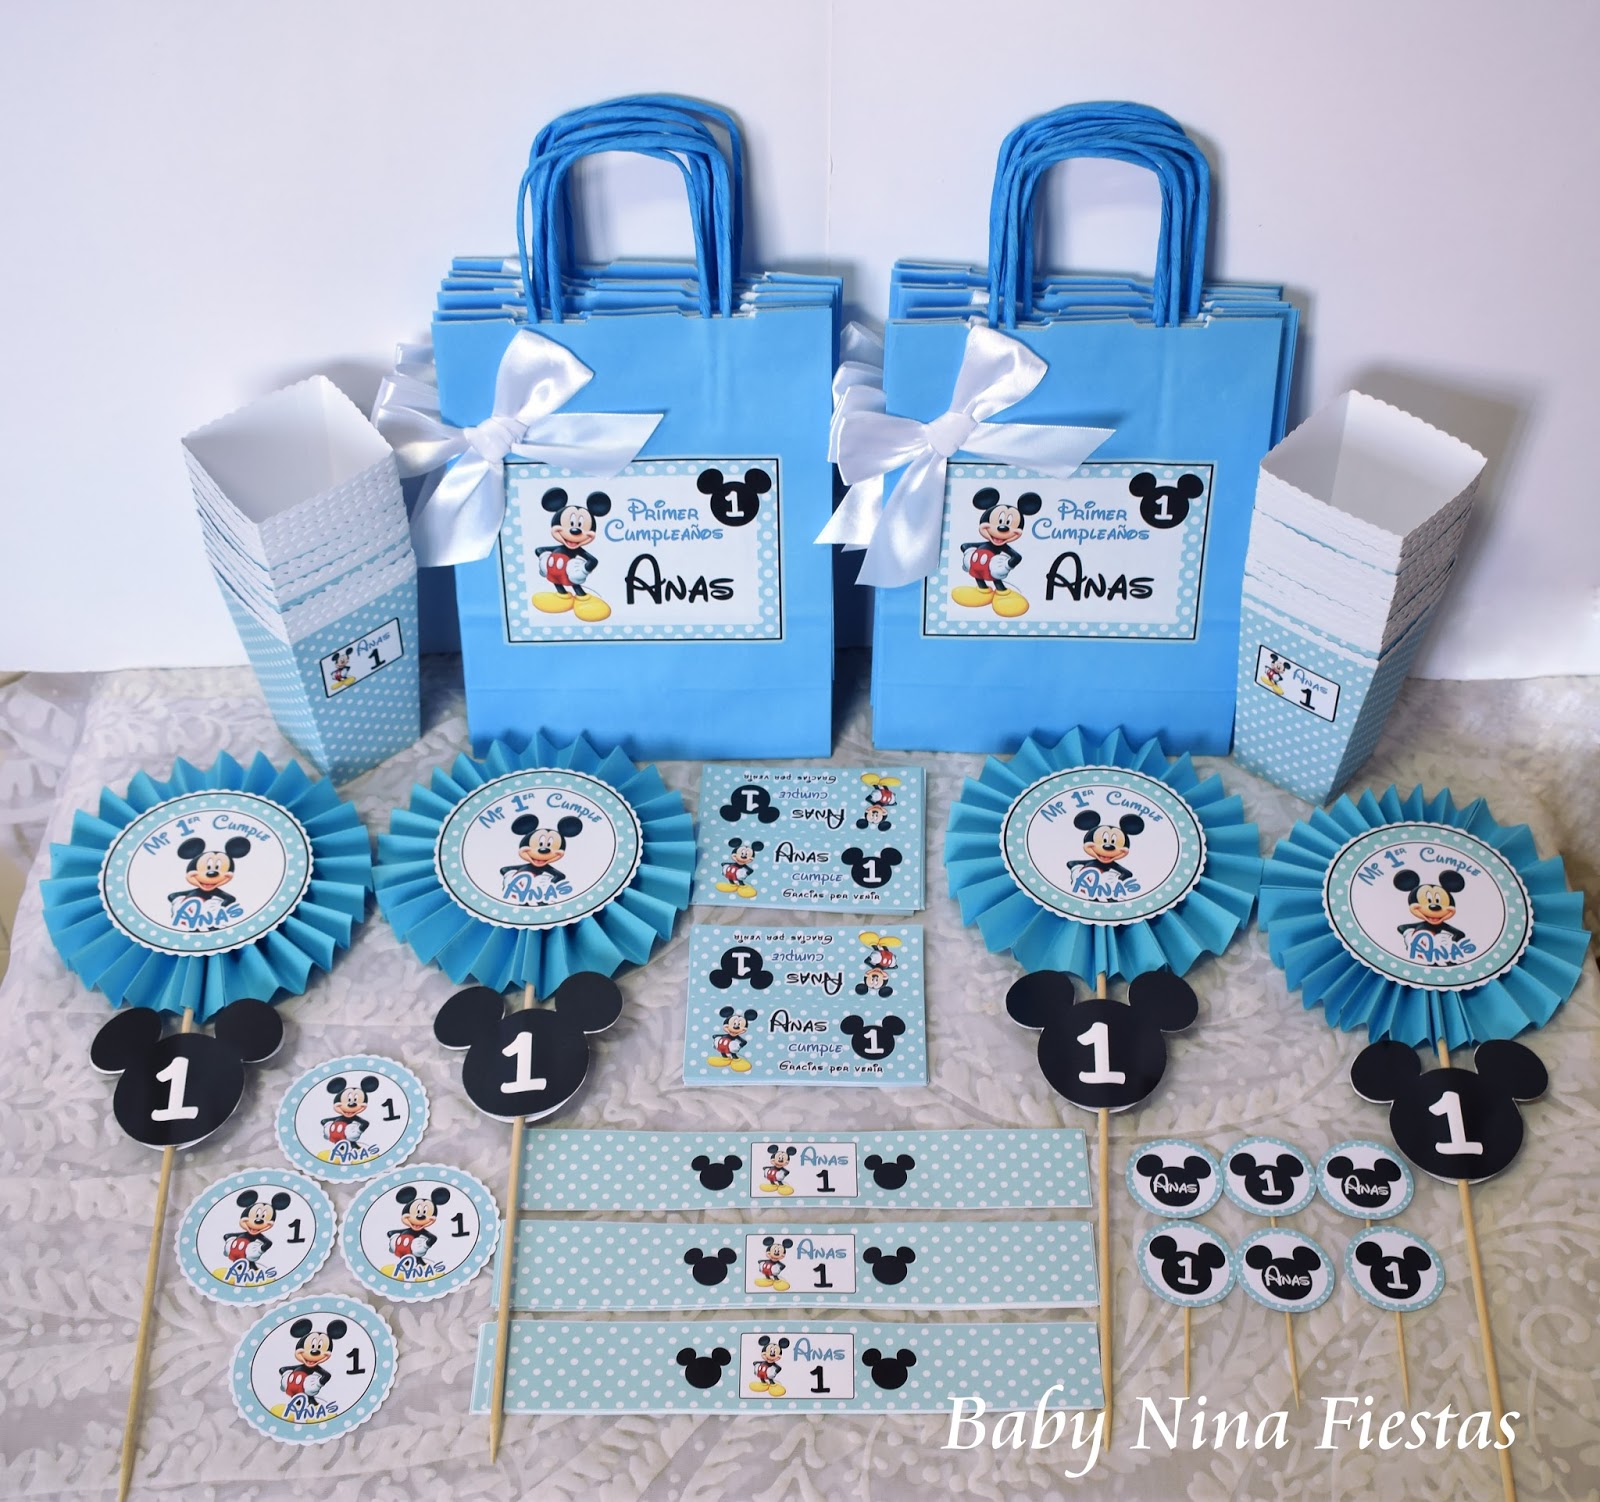 Pórtico correcto Geografía Baby Nina Fiestas: Kit de cumpleaños Mickey Mouse para el 1er cumple de Anas